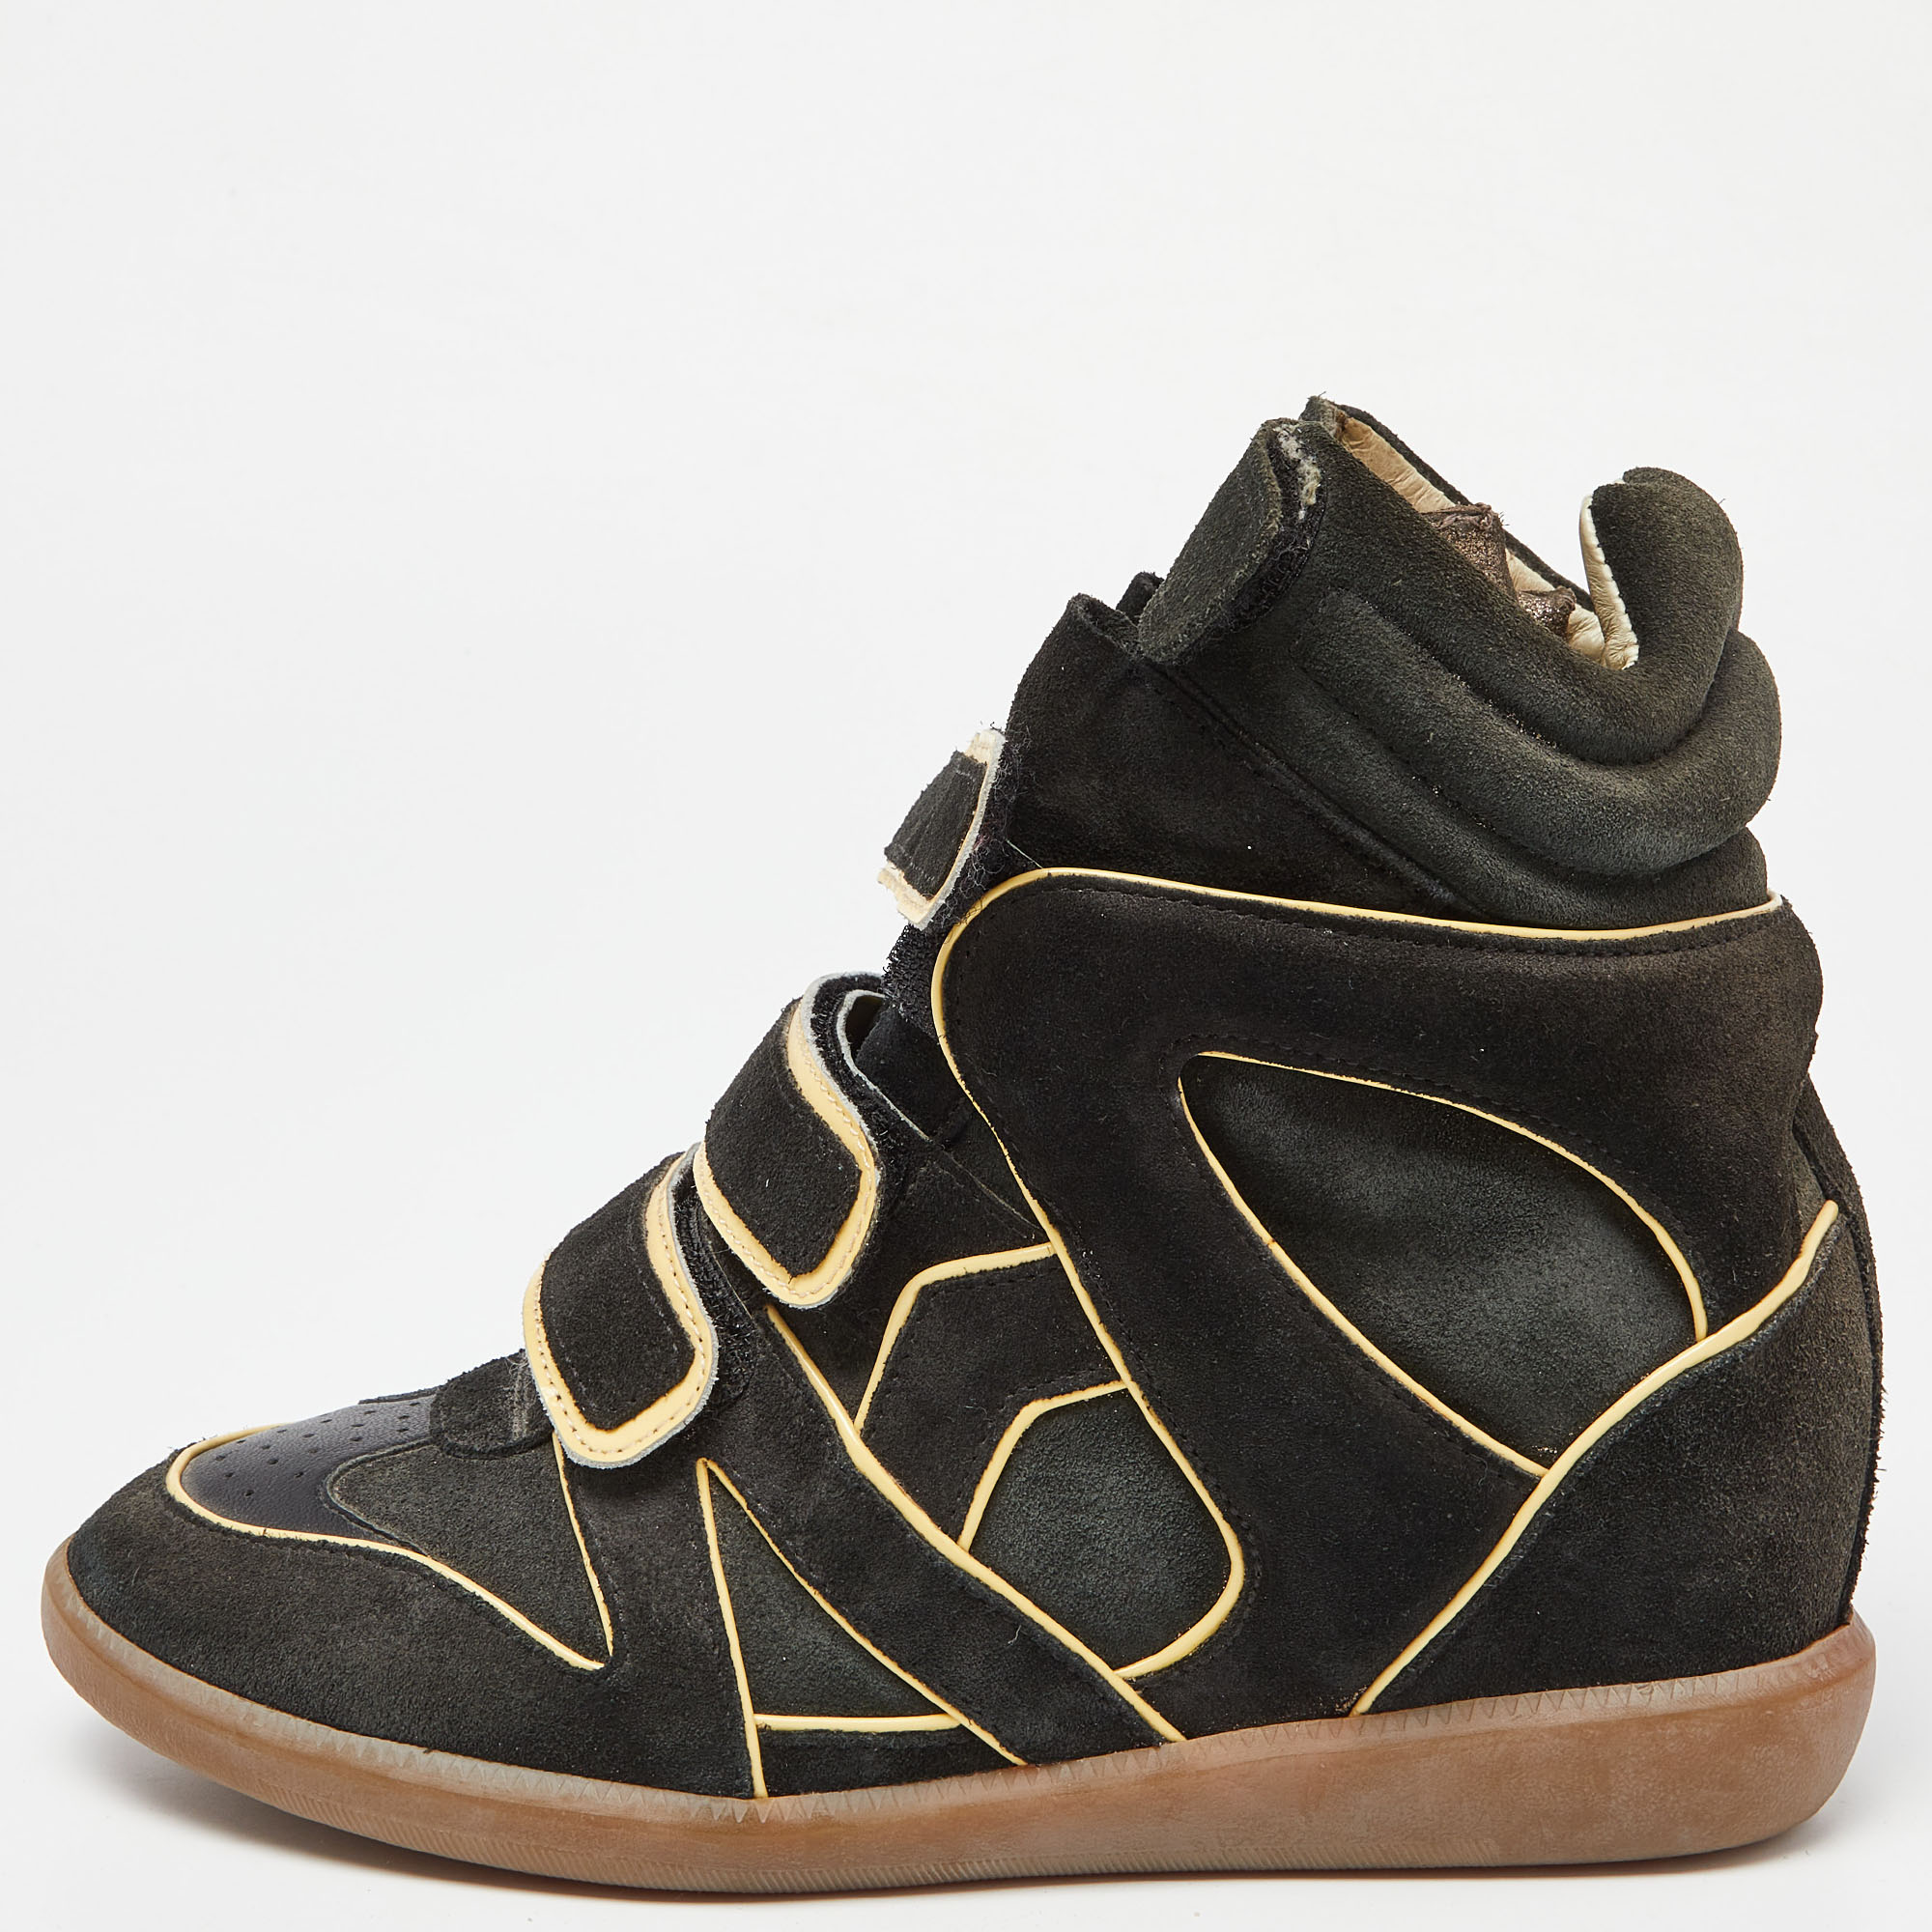 Isabel Marant Black Suede Bekett Sneakers Size 38